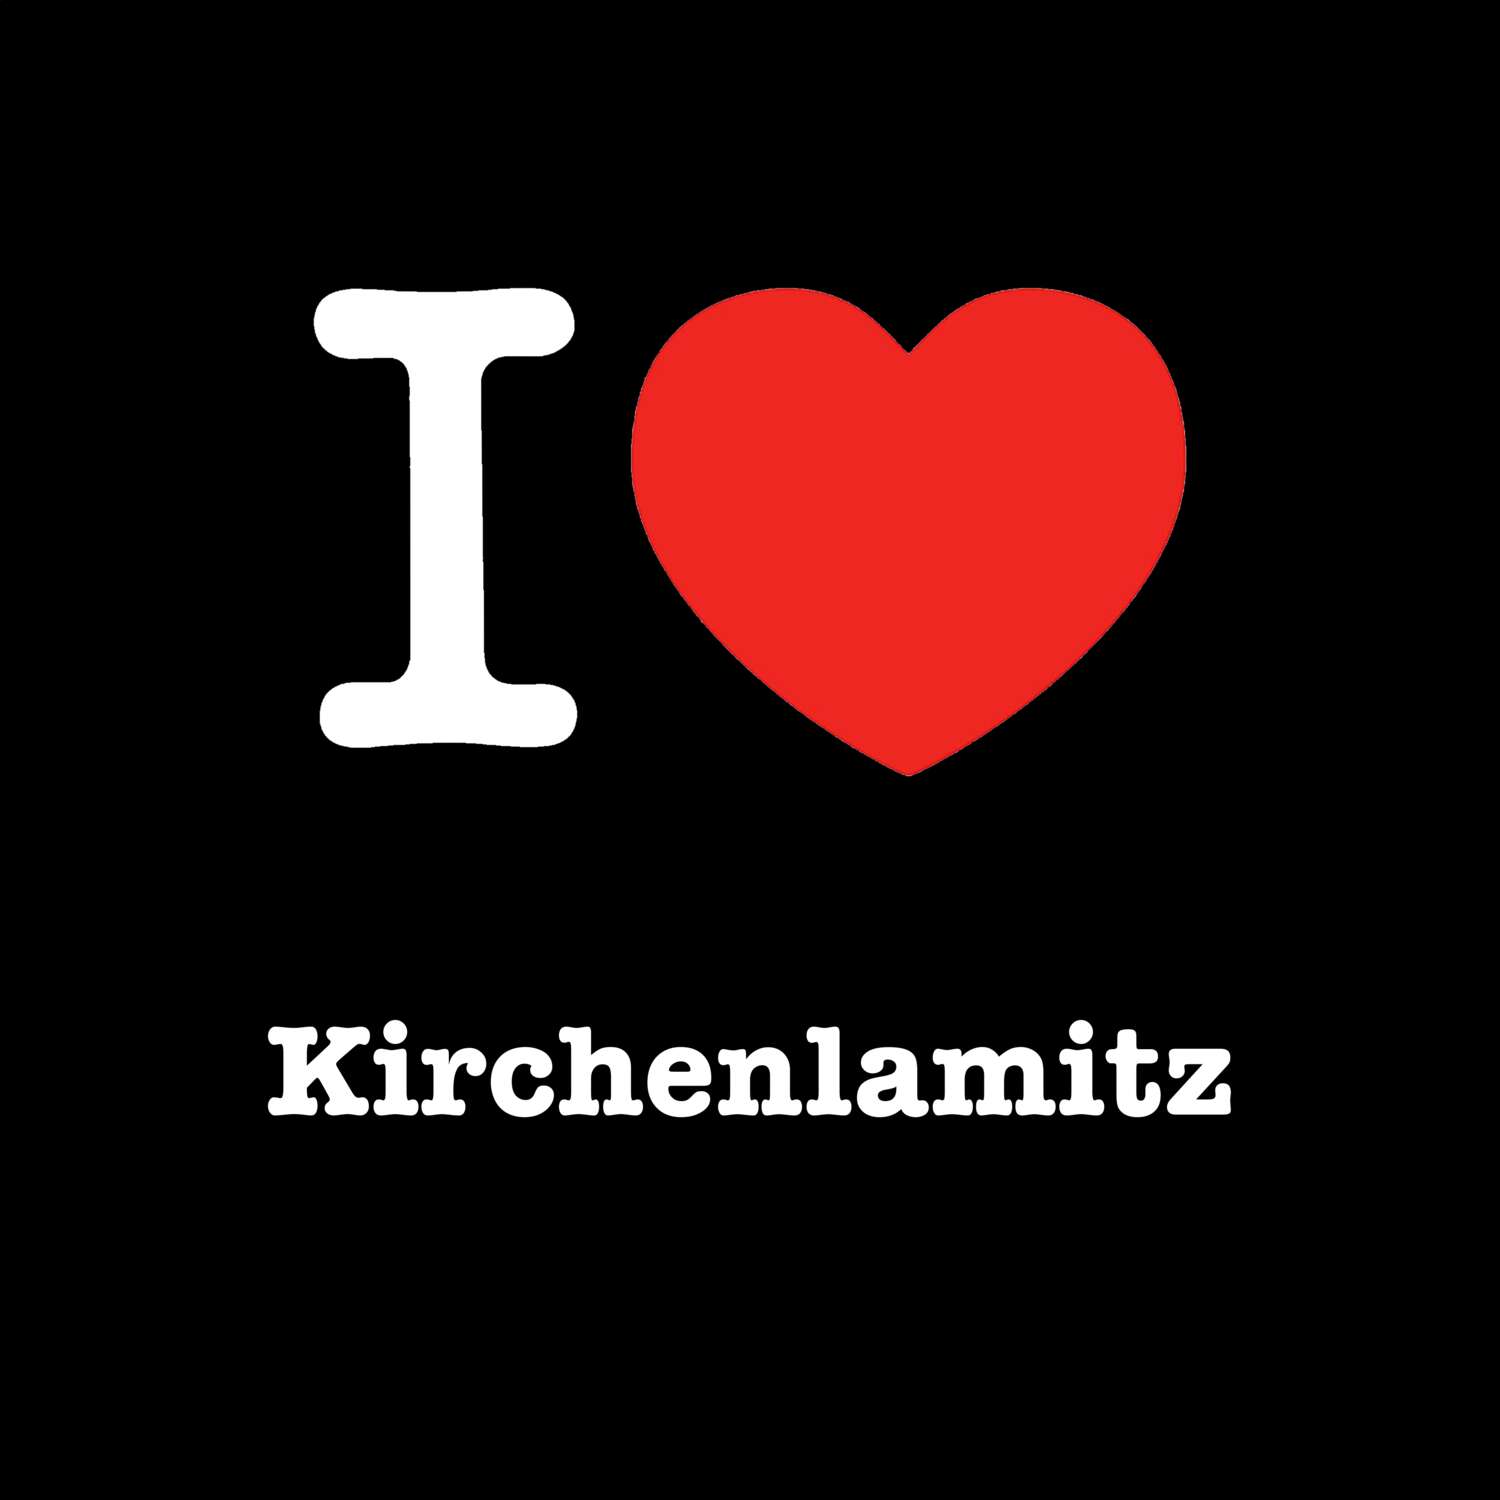 Kirchenlamitz T-Shirt »I love«